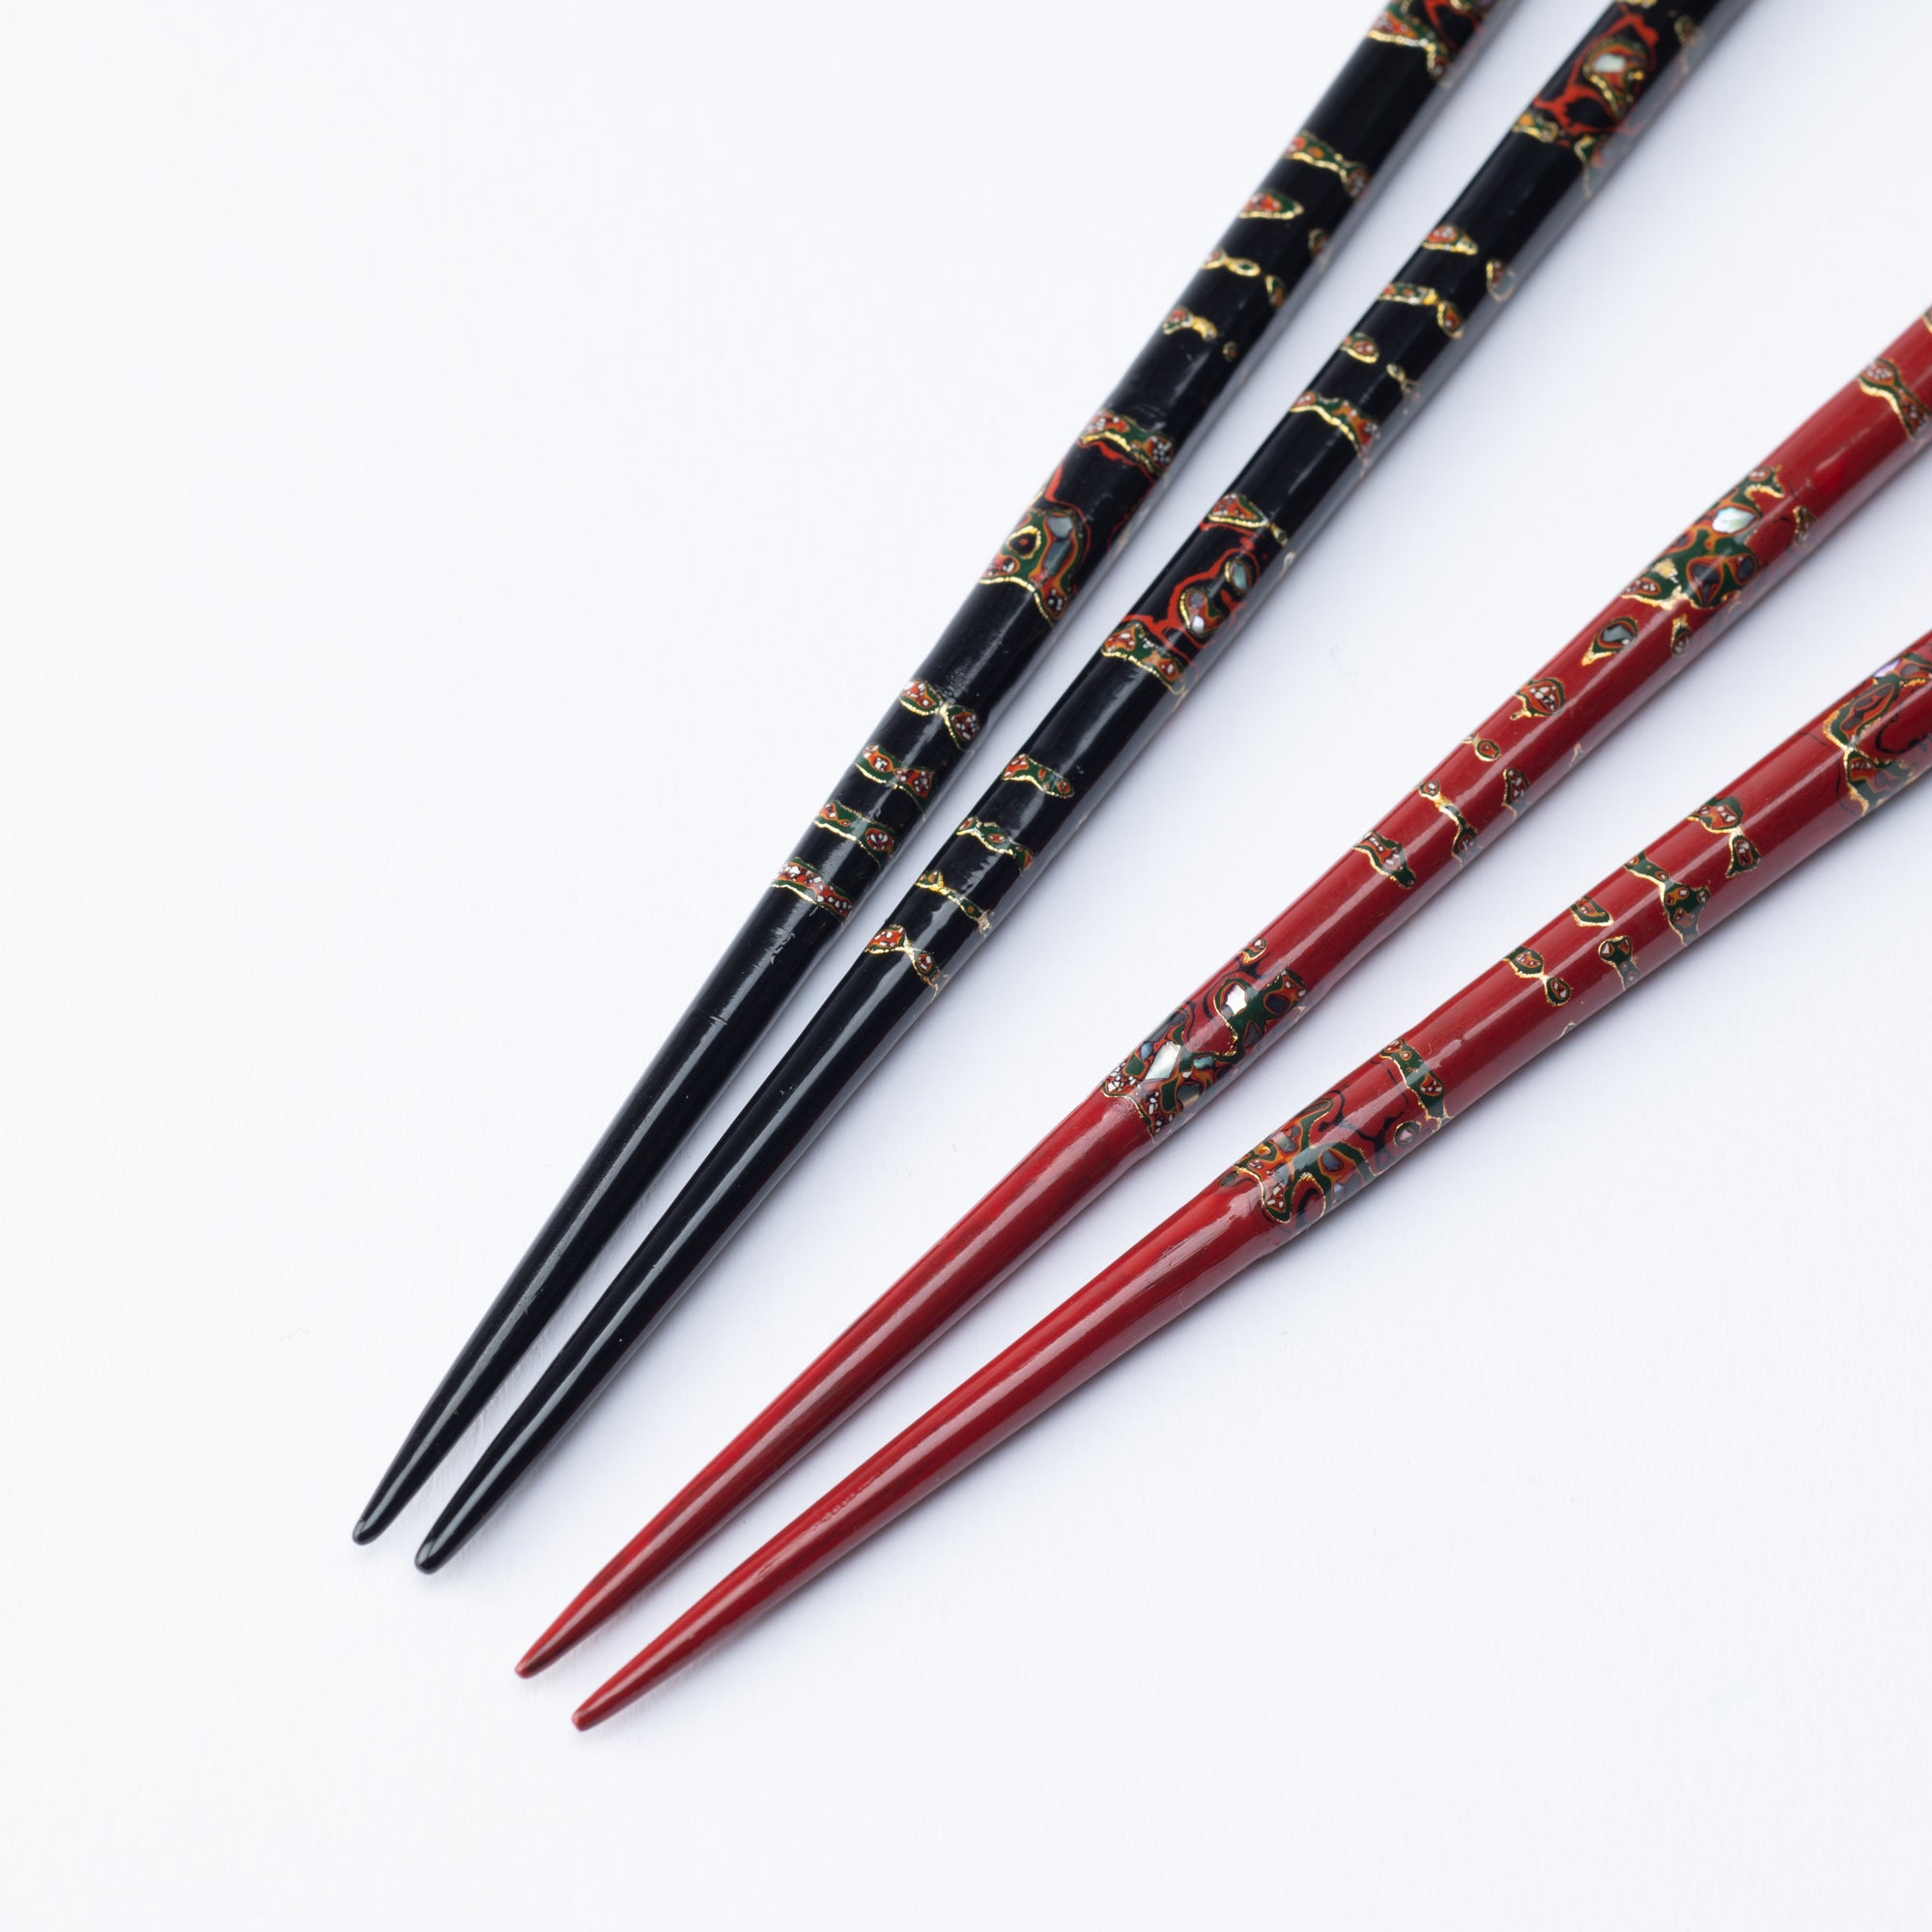 Matsukan Chiyo-Nishiki Wakasa Lacquerware Set of Two Pairs of Chopsticks 23.5 cm (9.3 in)/21.5 cm (8.5 in)